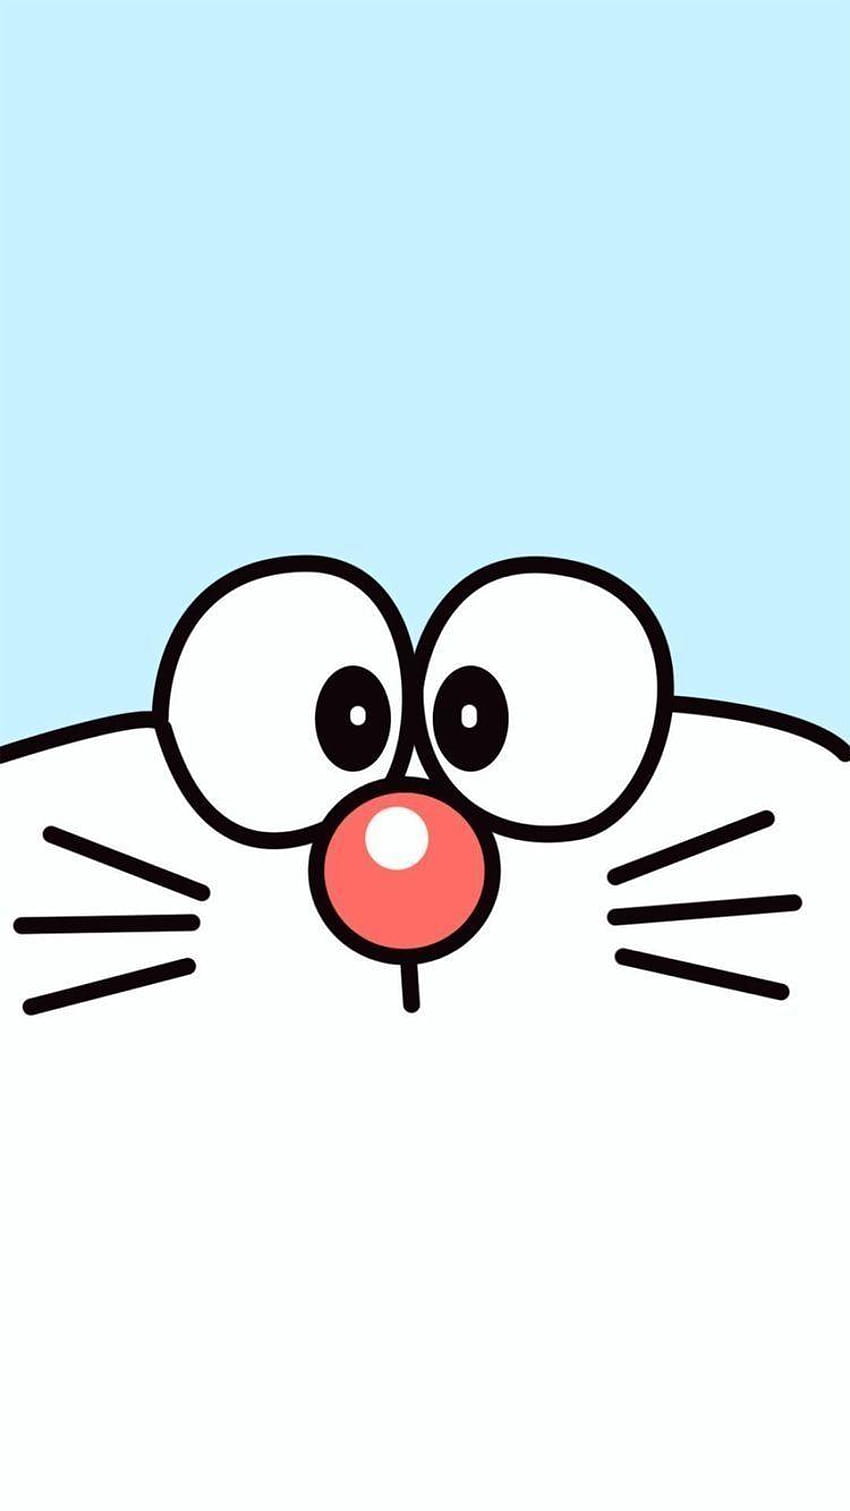 Doraemon: Hãy thưởng thức hình ảnh Doraemon, một chú mèo máy thân thiện, mang đến cho bạn những giây phút giải trí đầy vui vẻ và hồn nhiên. Hãy khám phá thế giới phong phú của Doraemon cùng chú mèo ưa thích của các bạn nhé!